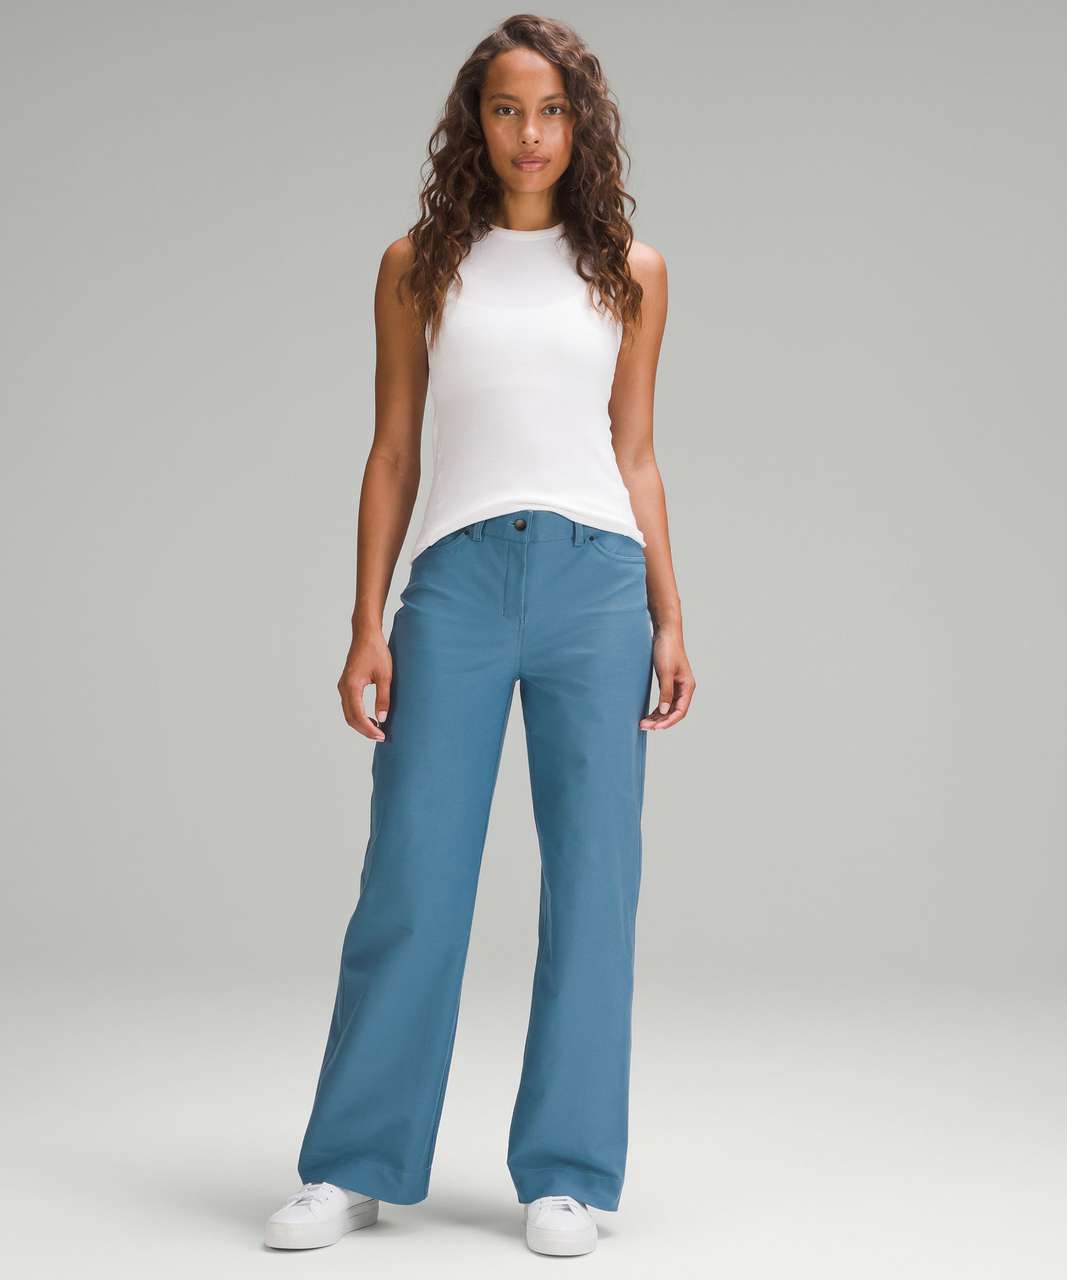 Lululemon City Sleek 5 Pocket High-Rise Wide-Leg Pant Full Length *Light Utilitech - Utility Blue